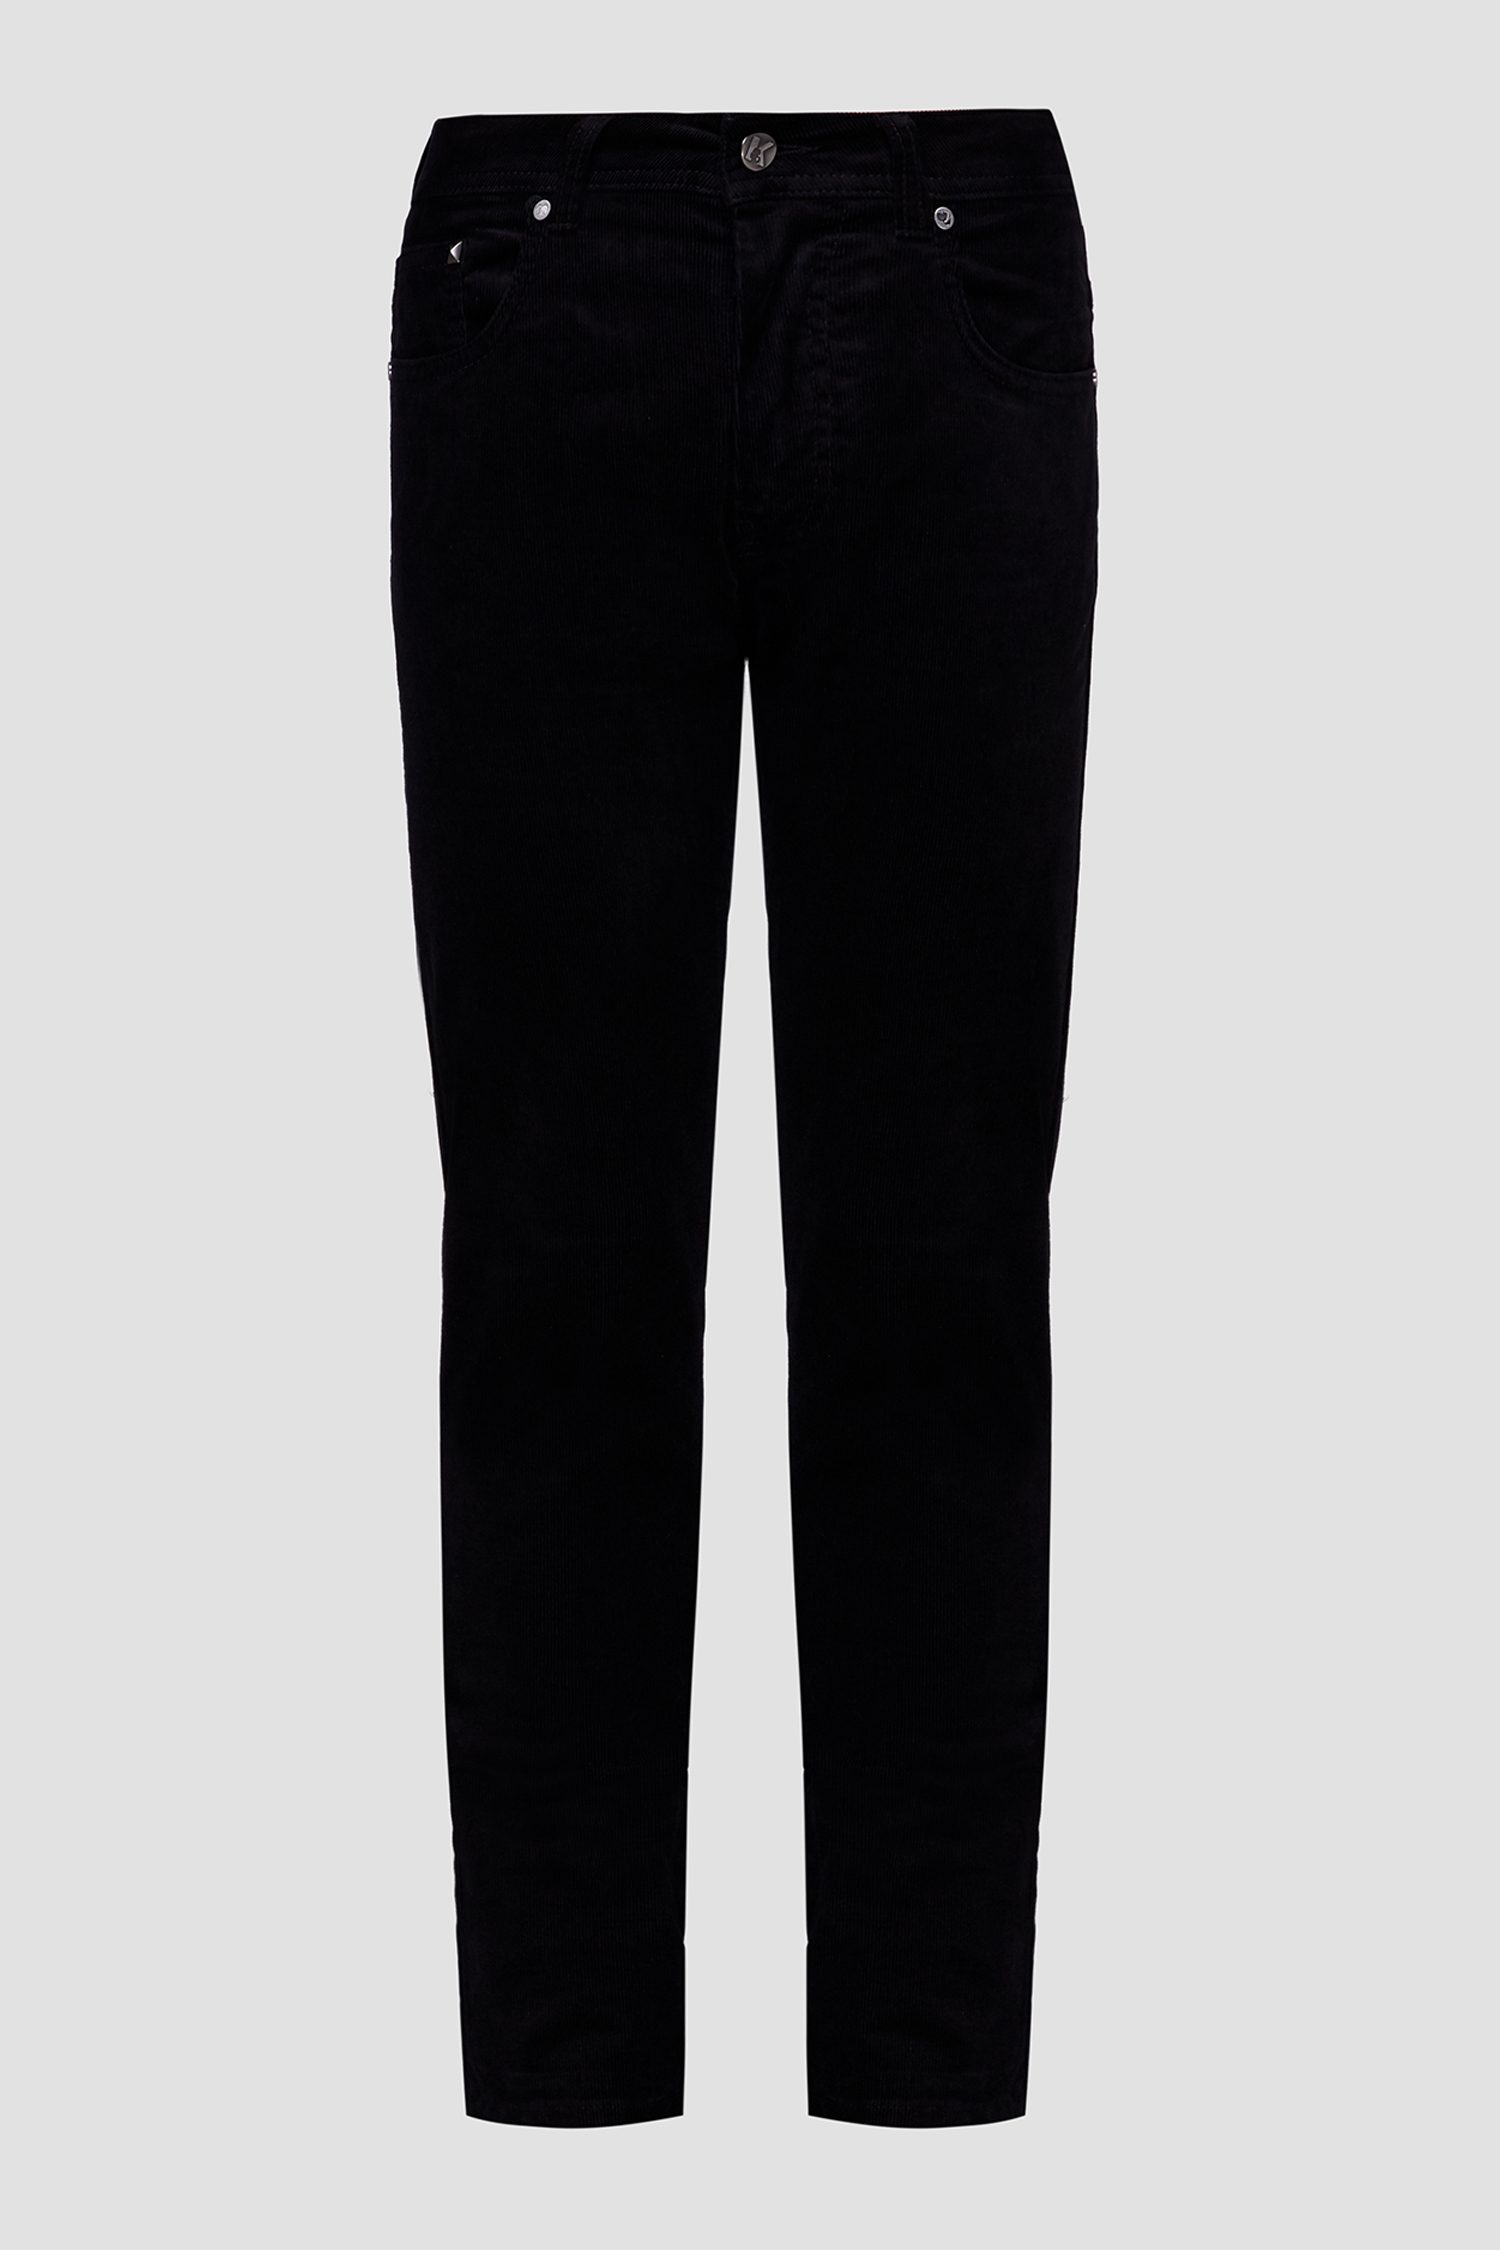 Мужские черные вельветовые брюки Karl Lagerfeld 502822.265840;990